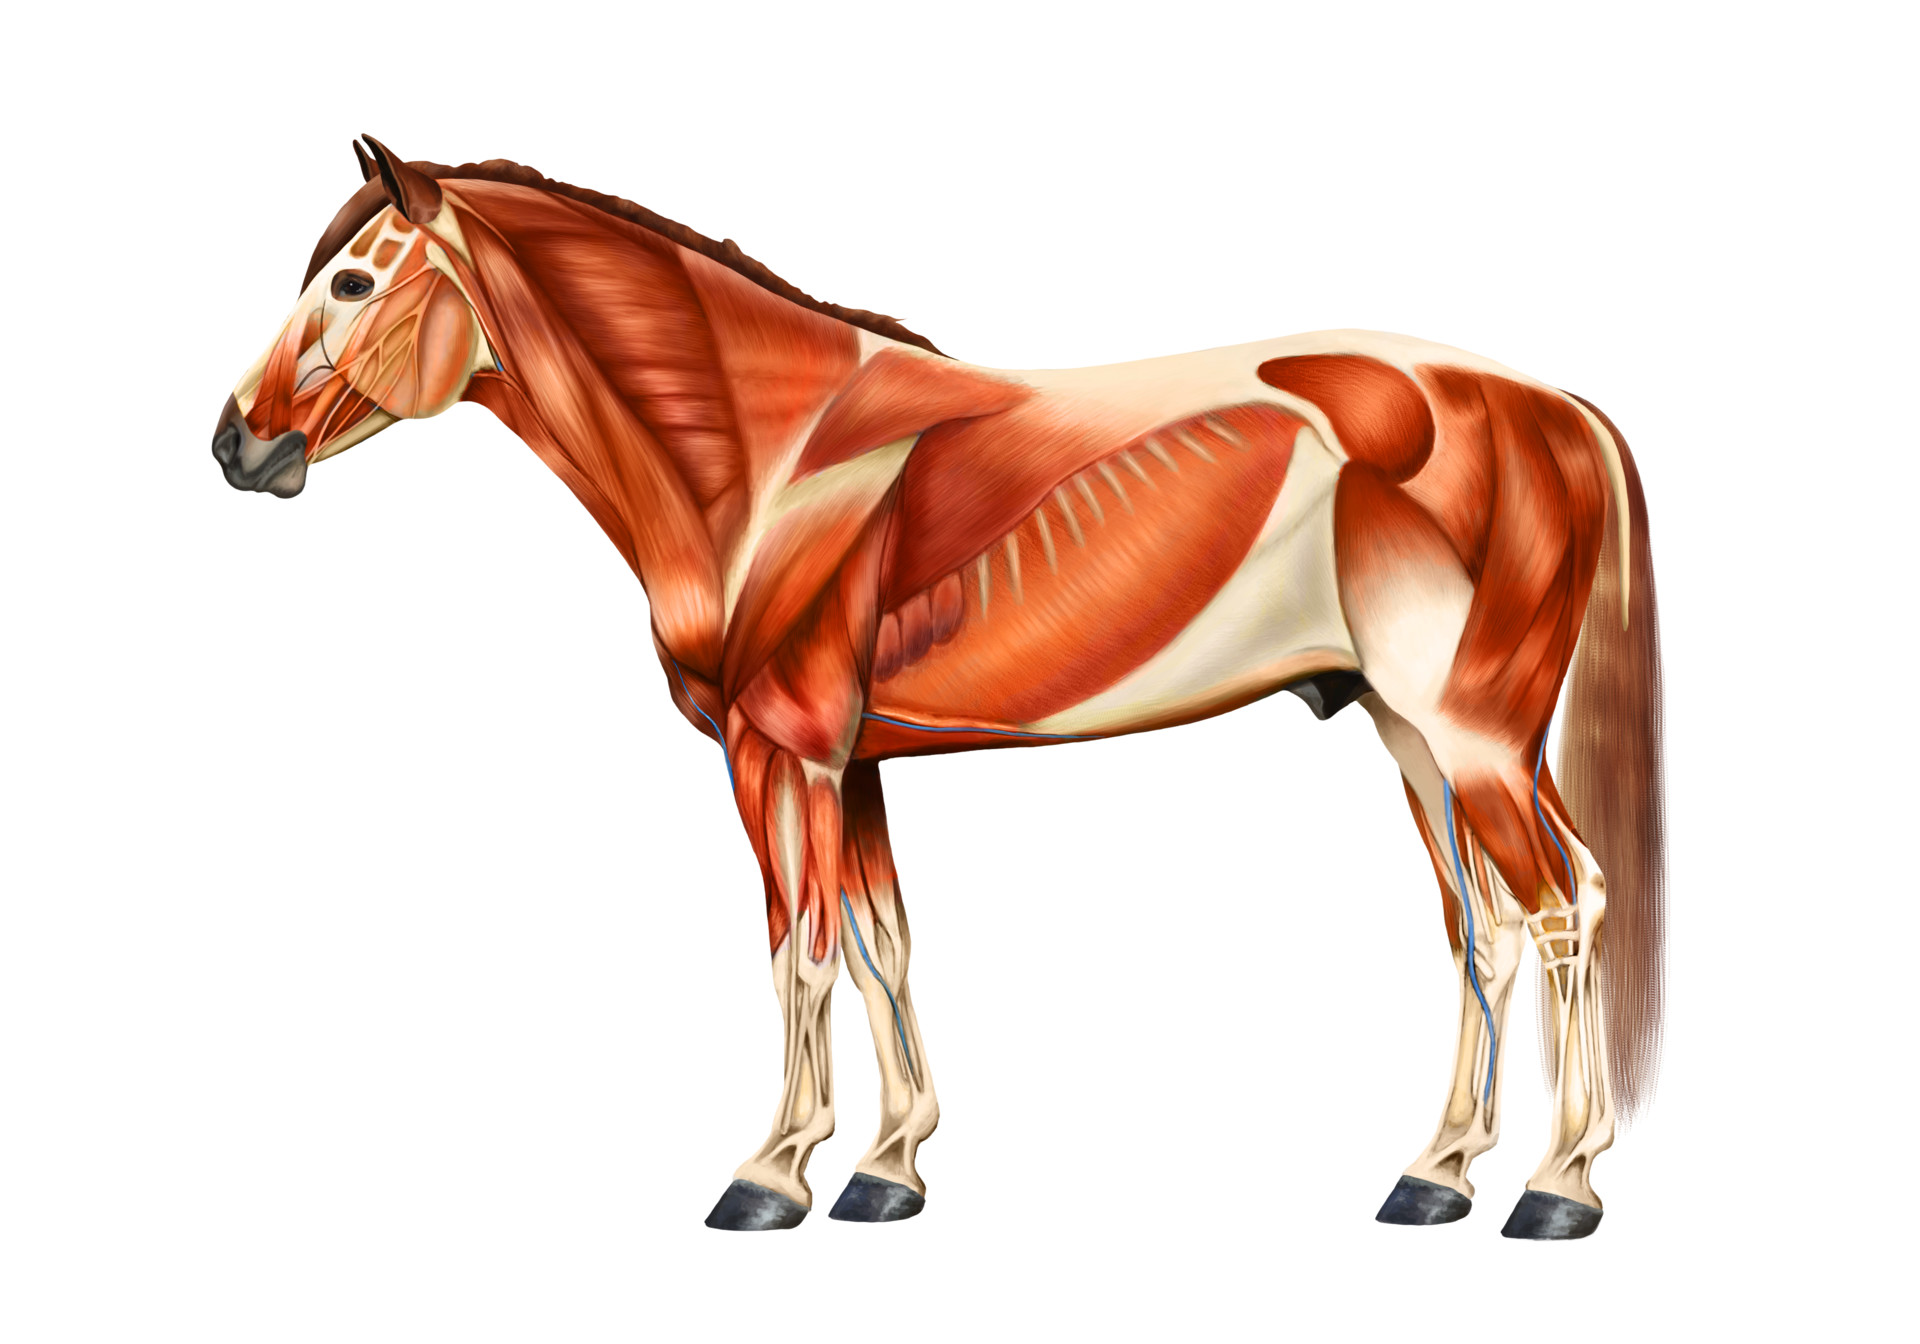 ArtStation - Horse muscle anatomy, Elisa Pitkänen